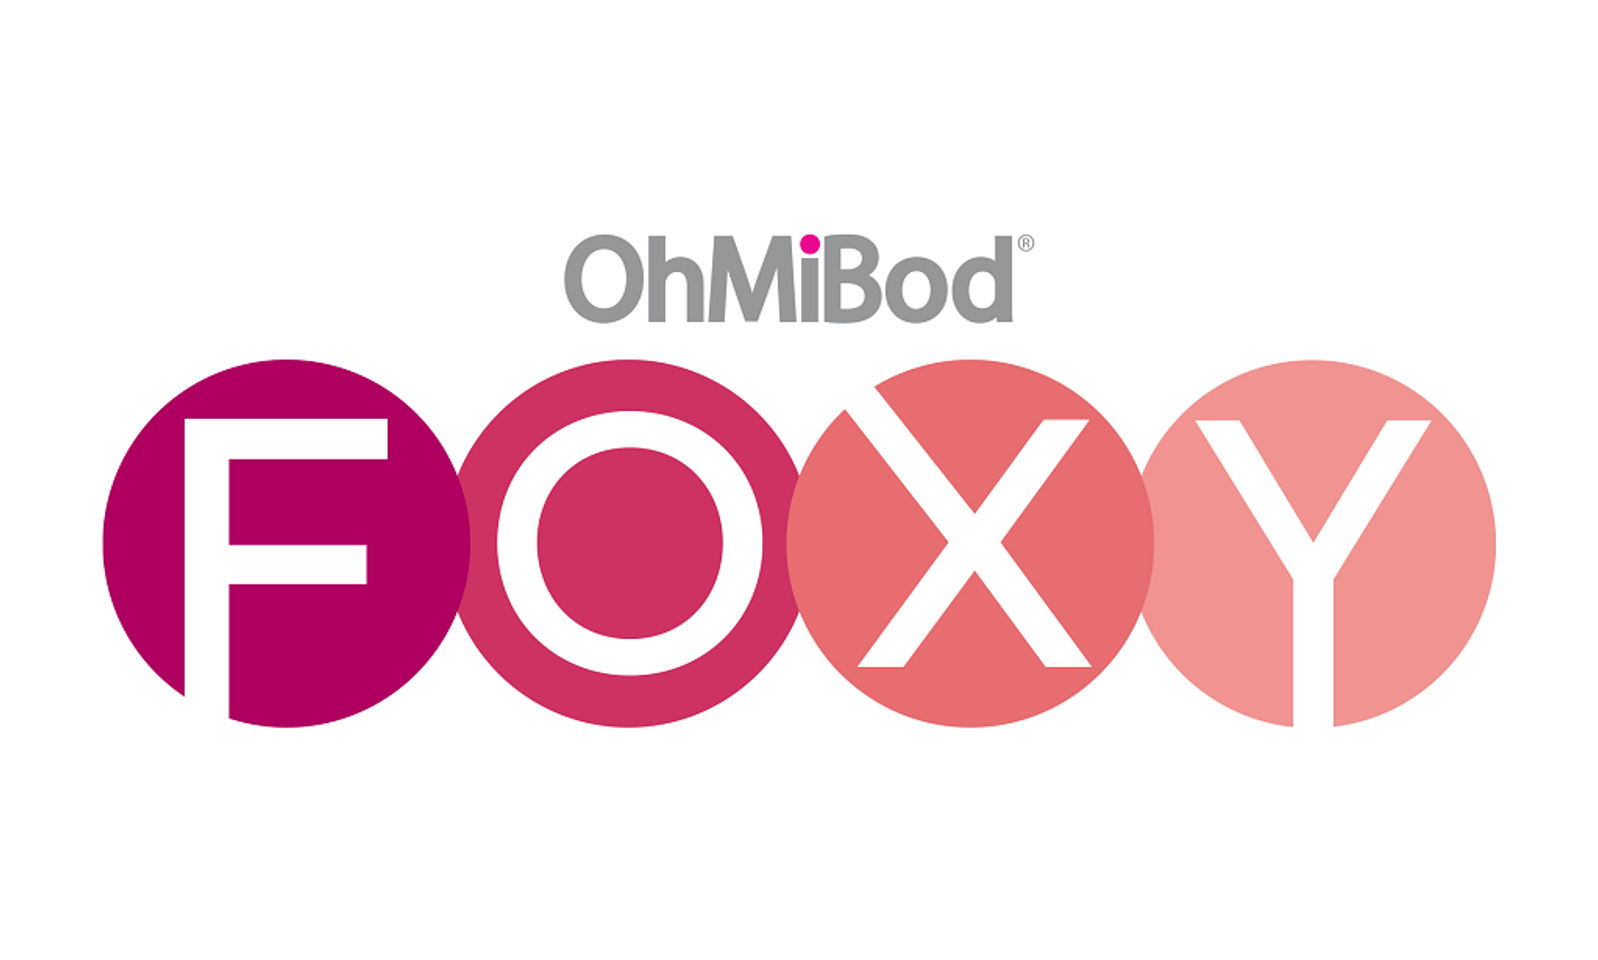 Ohmibod foxy